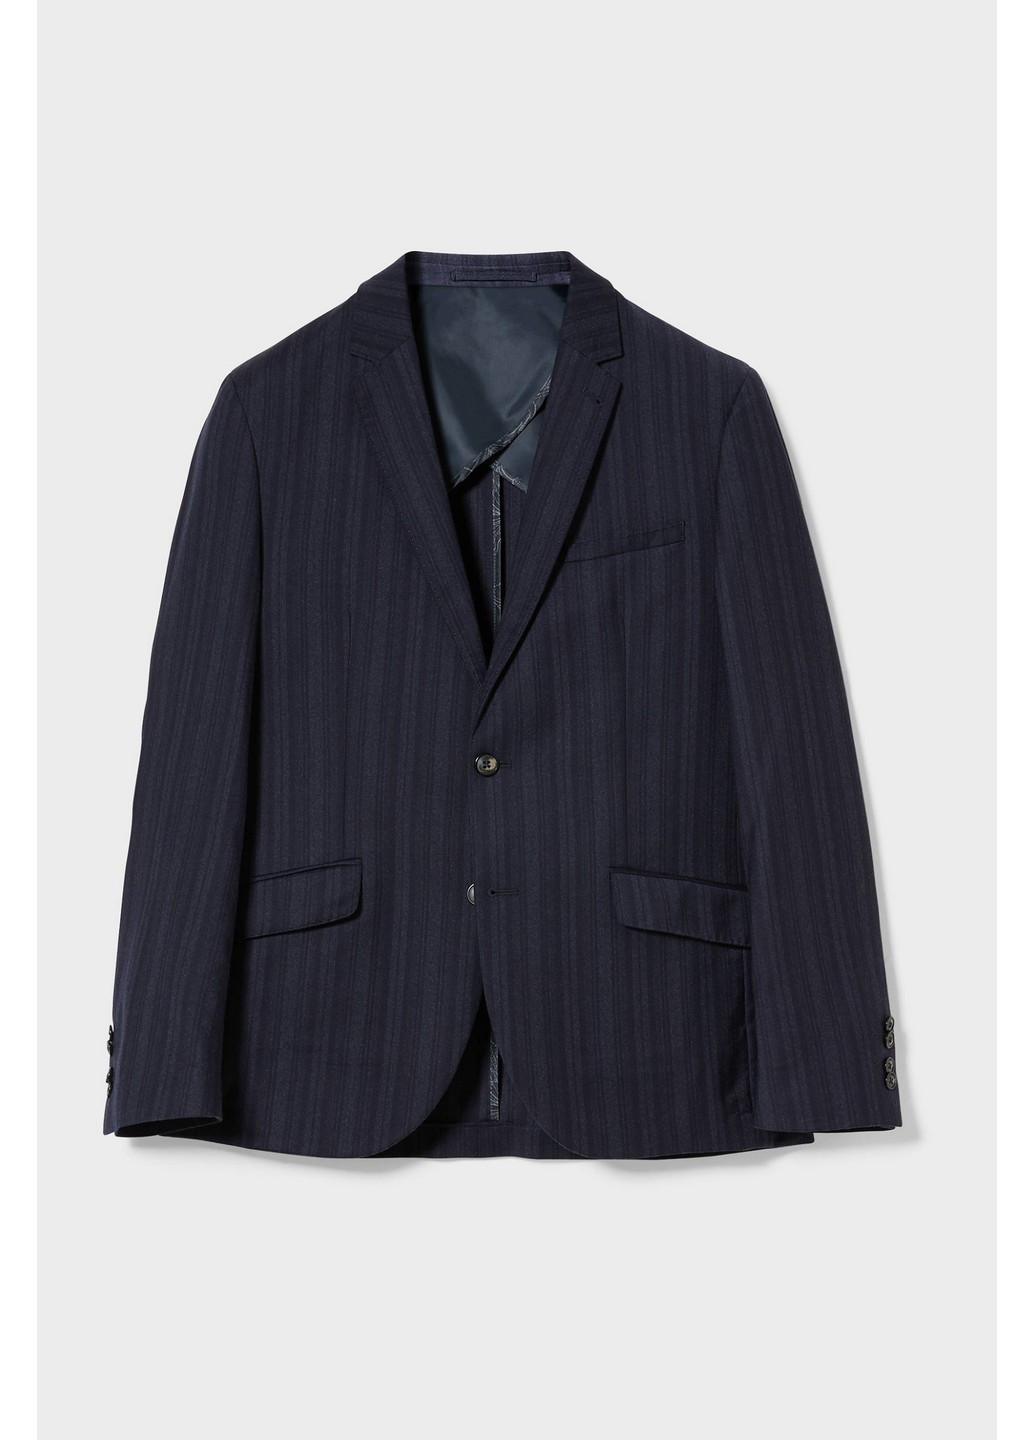 Пиджак C&A полоска тёмно-синий деловой шерсть